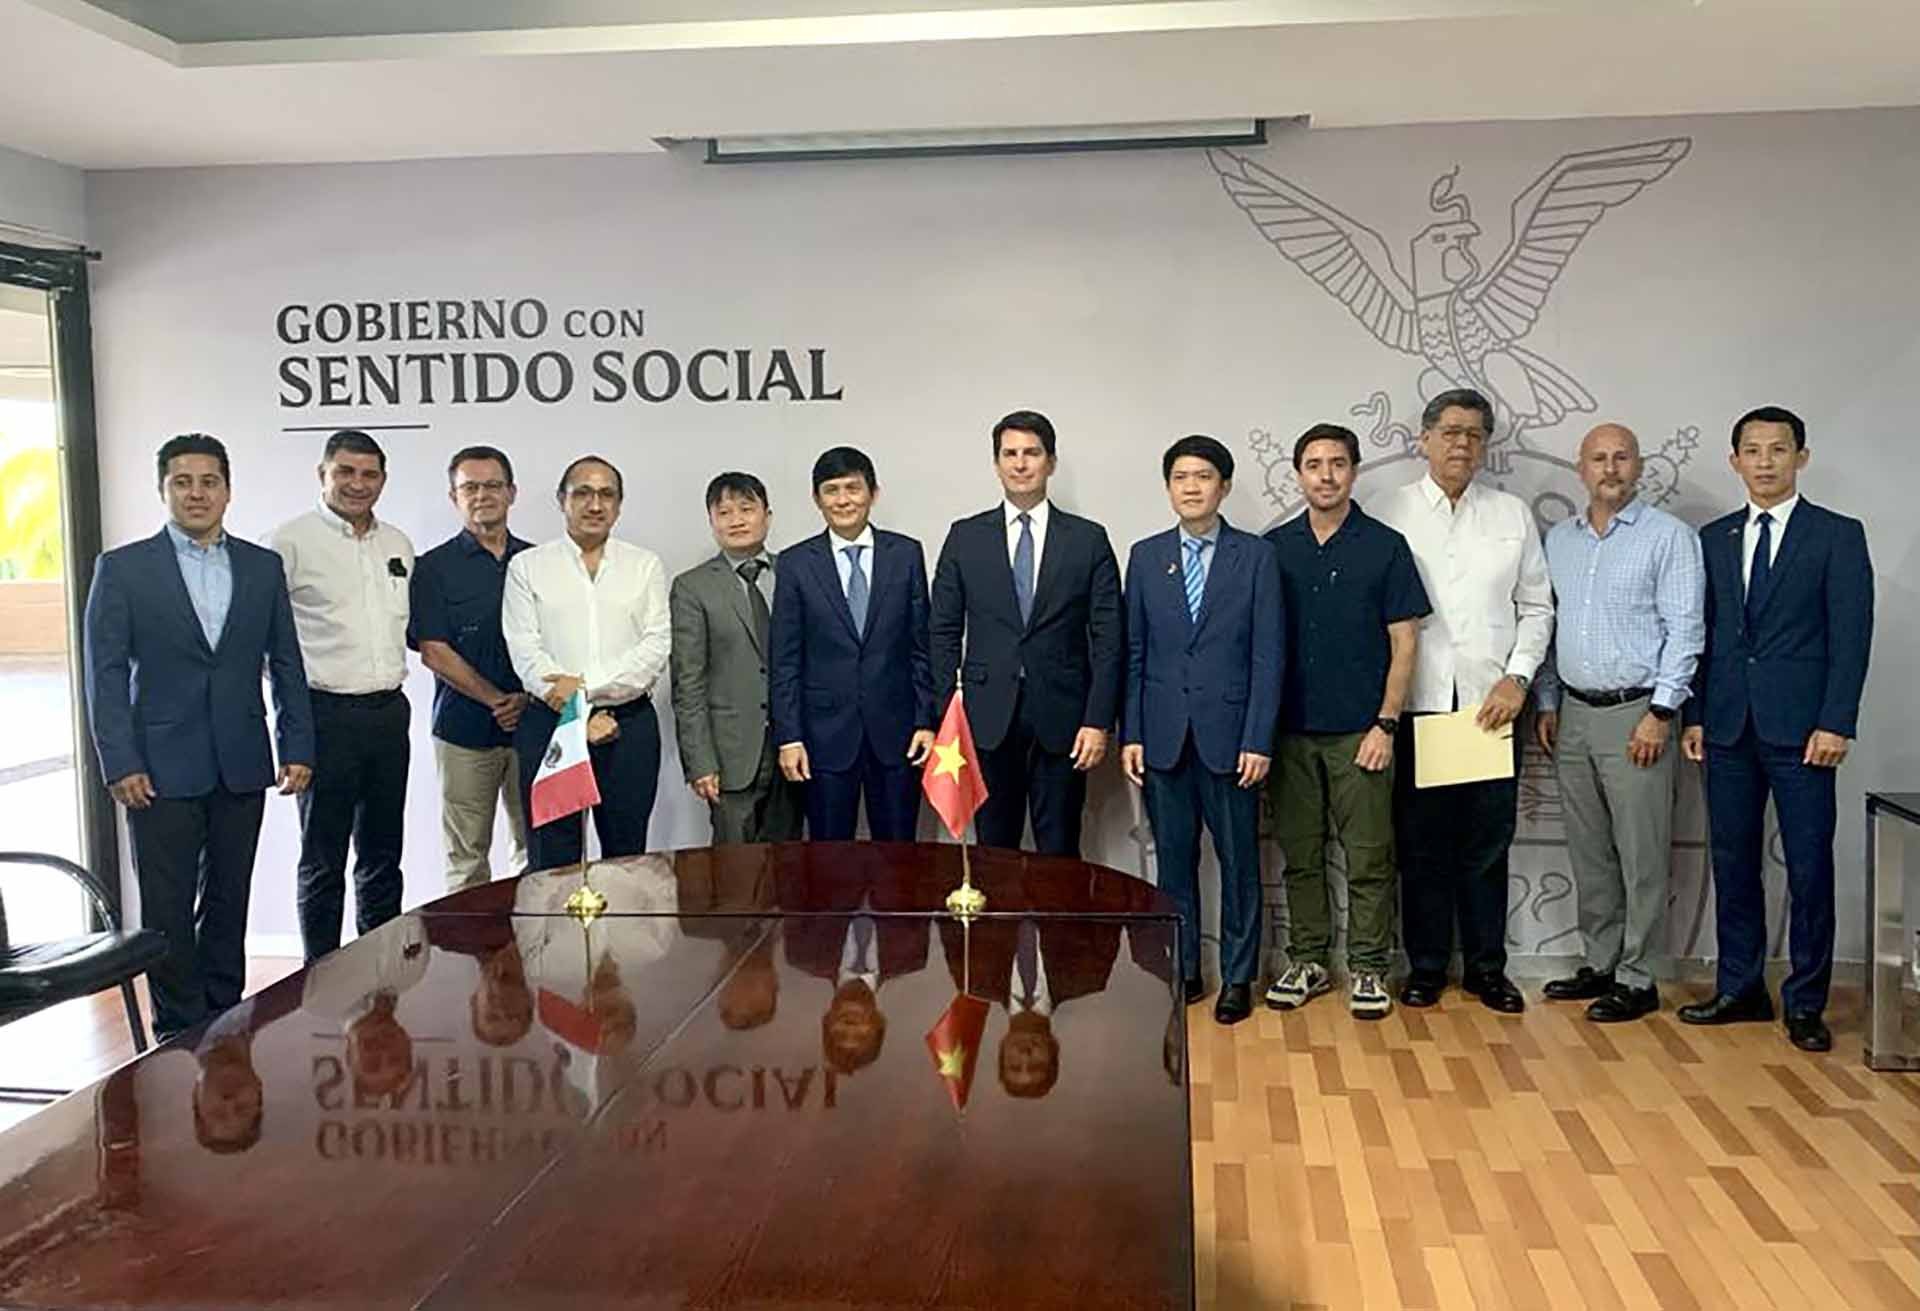 Đại sứ Nguyễn Hoành Năm gặp các cơ quan, Hội đồng doanh nghiệp và doanh nghiệp của bang Sinaloa.